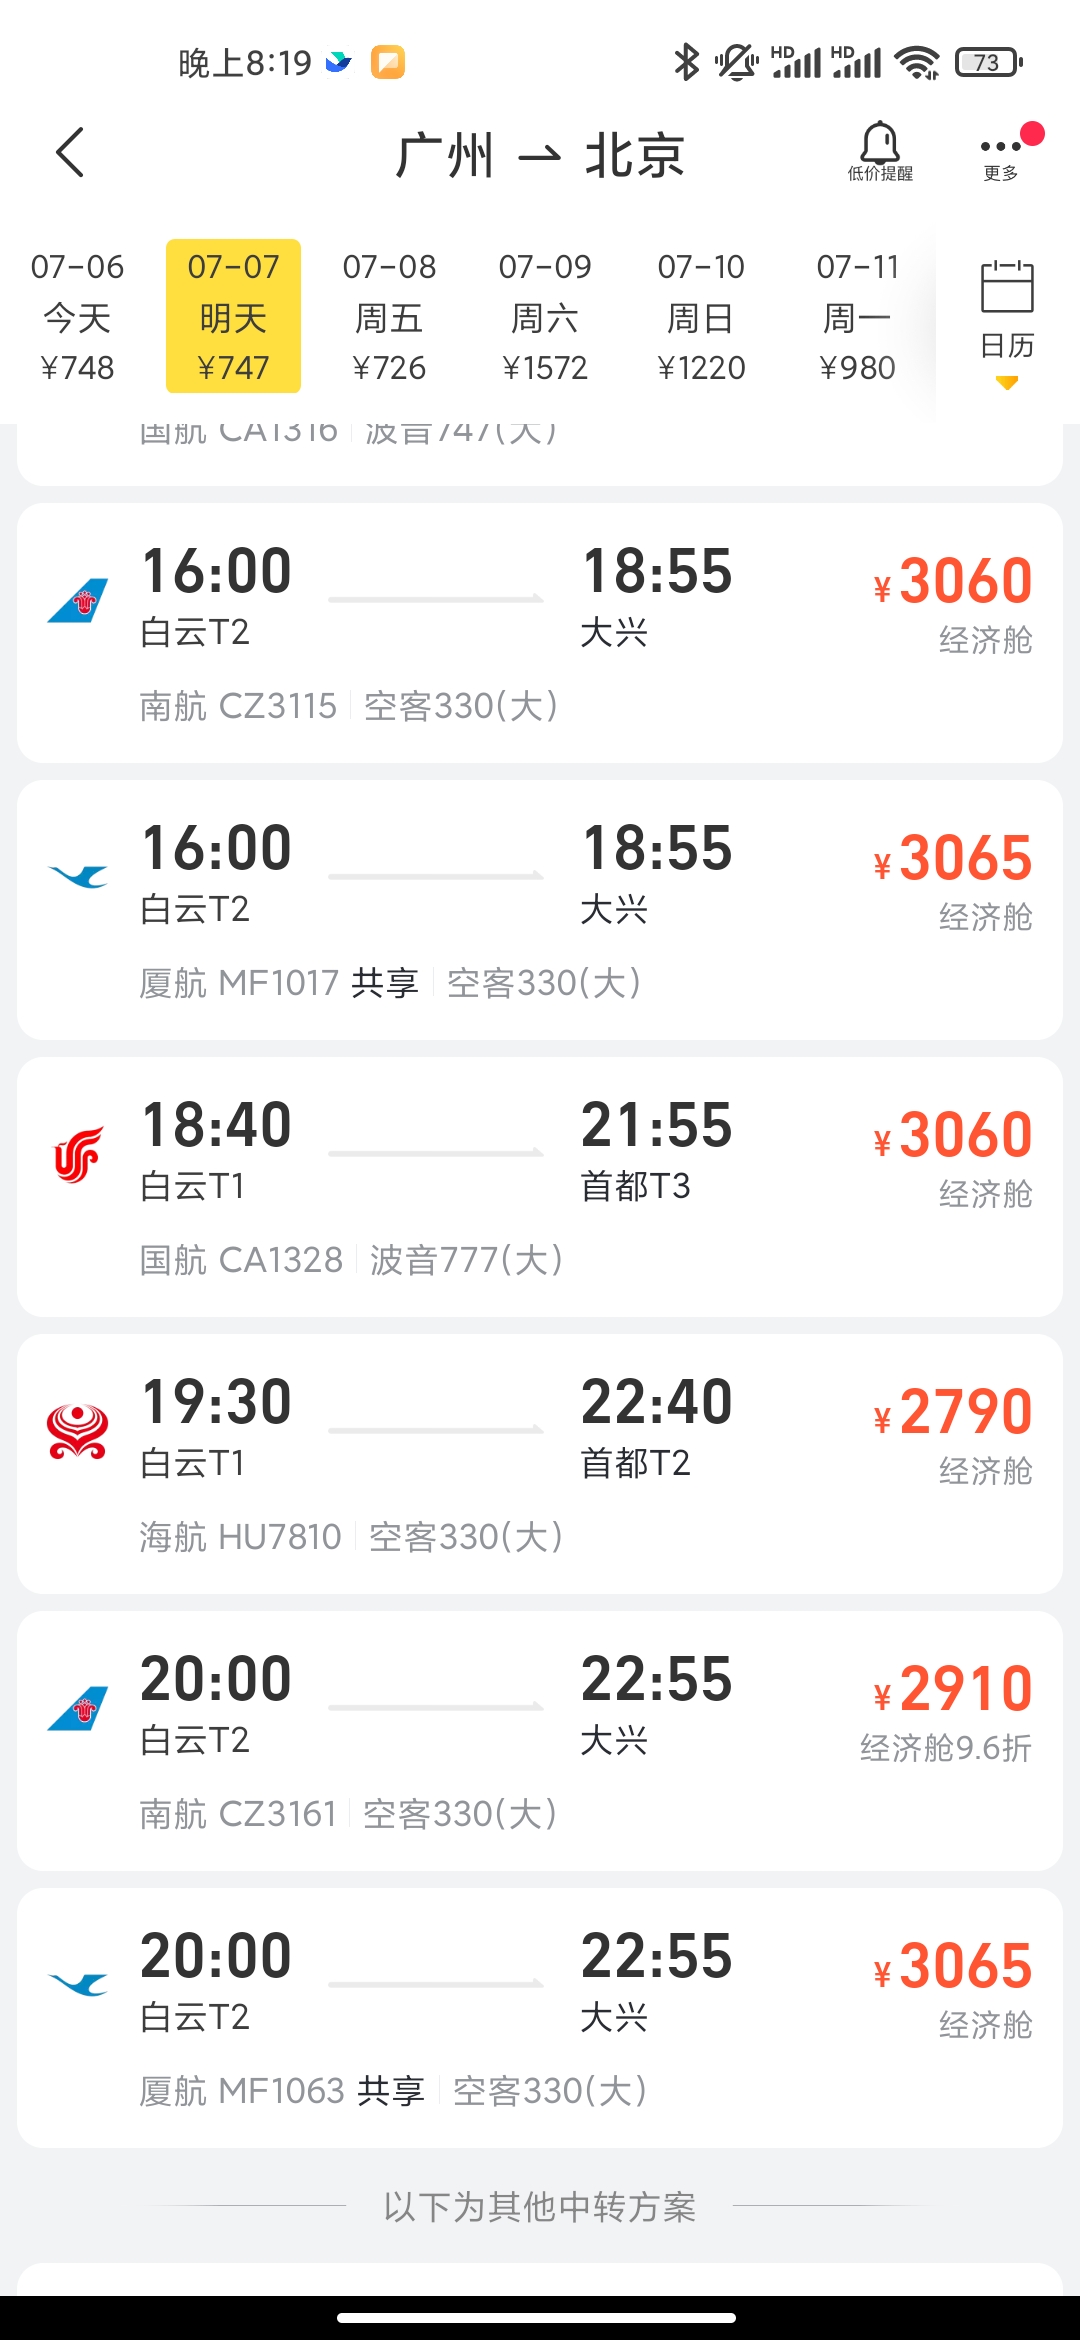 在支付宝中怎么购买去哈尔滨的特价机票？ | 跟单网gendan5.com